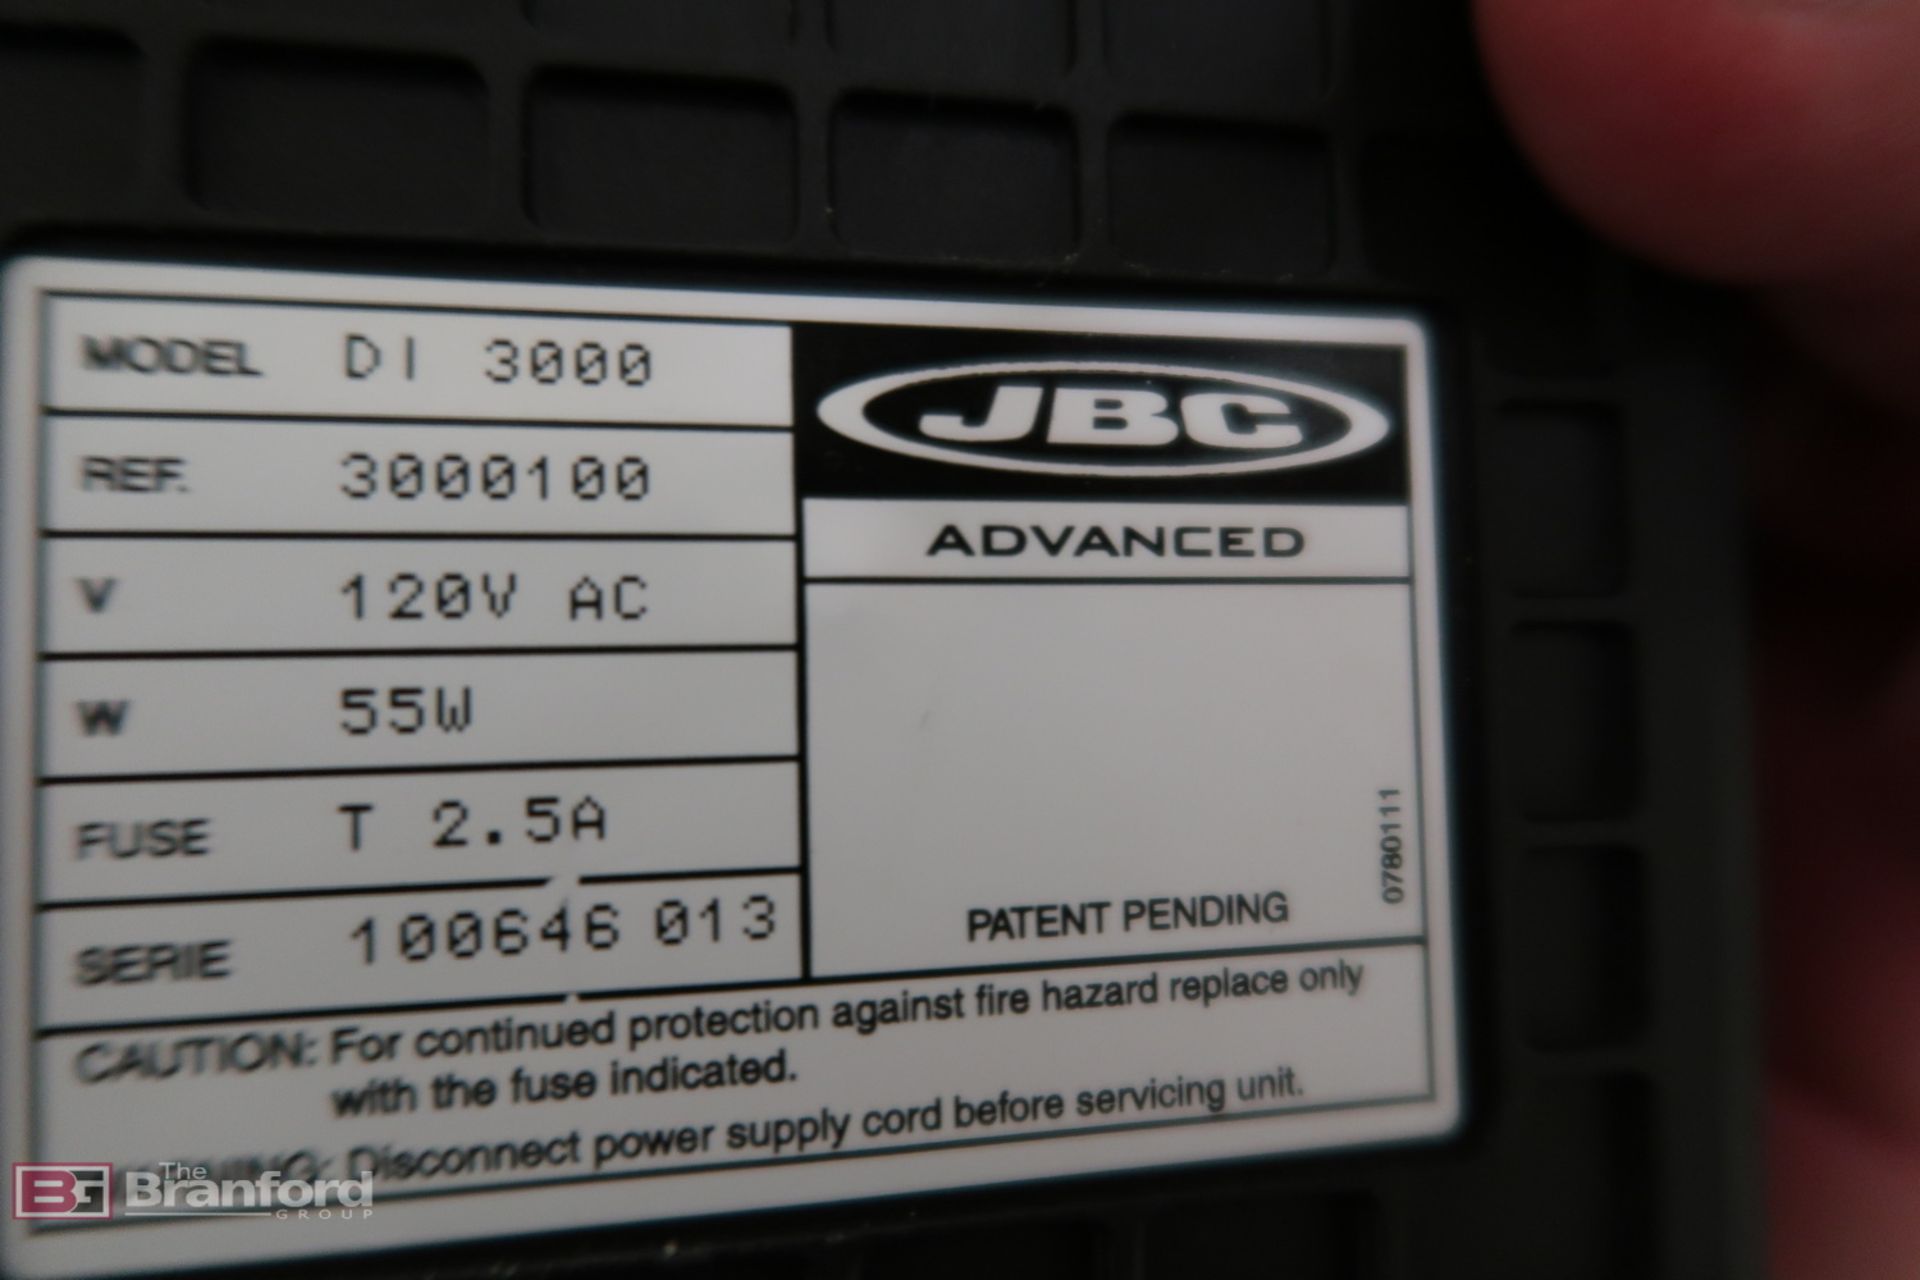 JBC Advance D1 3000 digital soldering station - Image 3 of 3